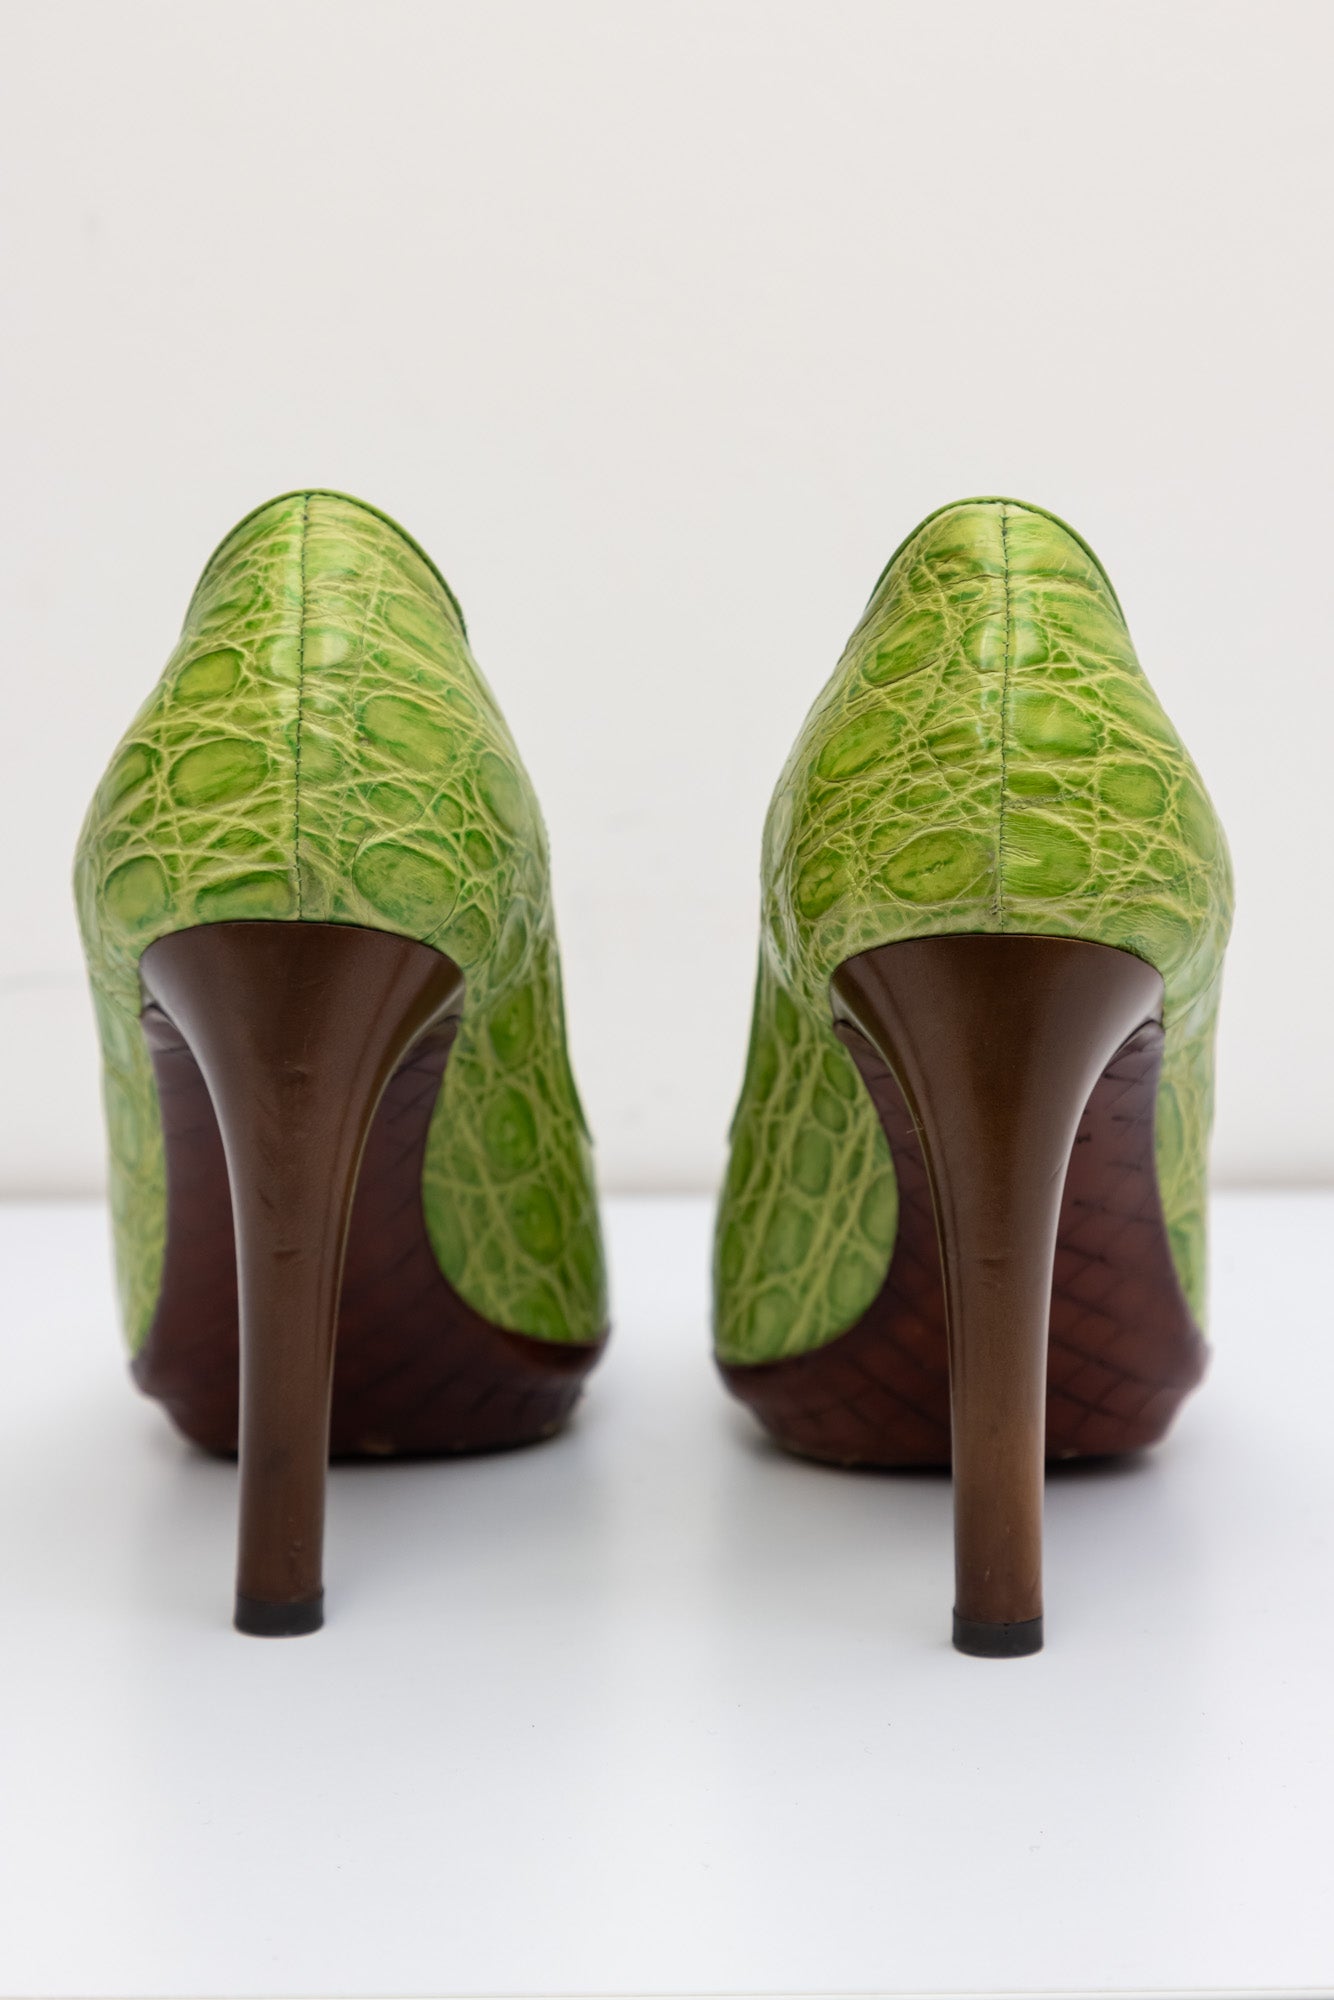 BOTTEGA VENETA Зеленые туфли-лодочки из кожи аллигатора с открытым носком